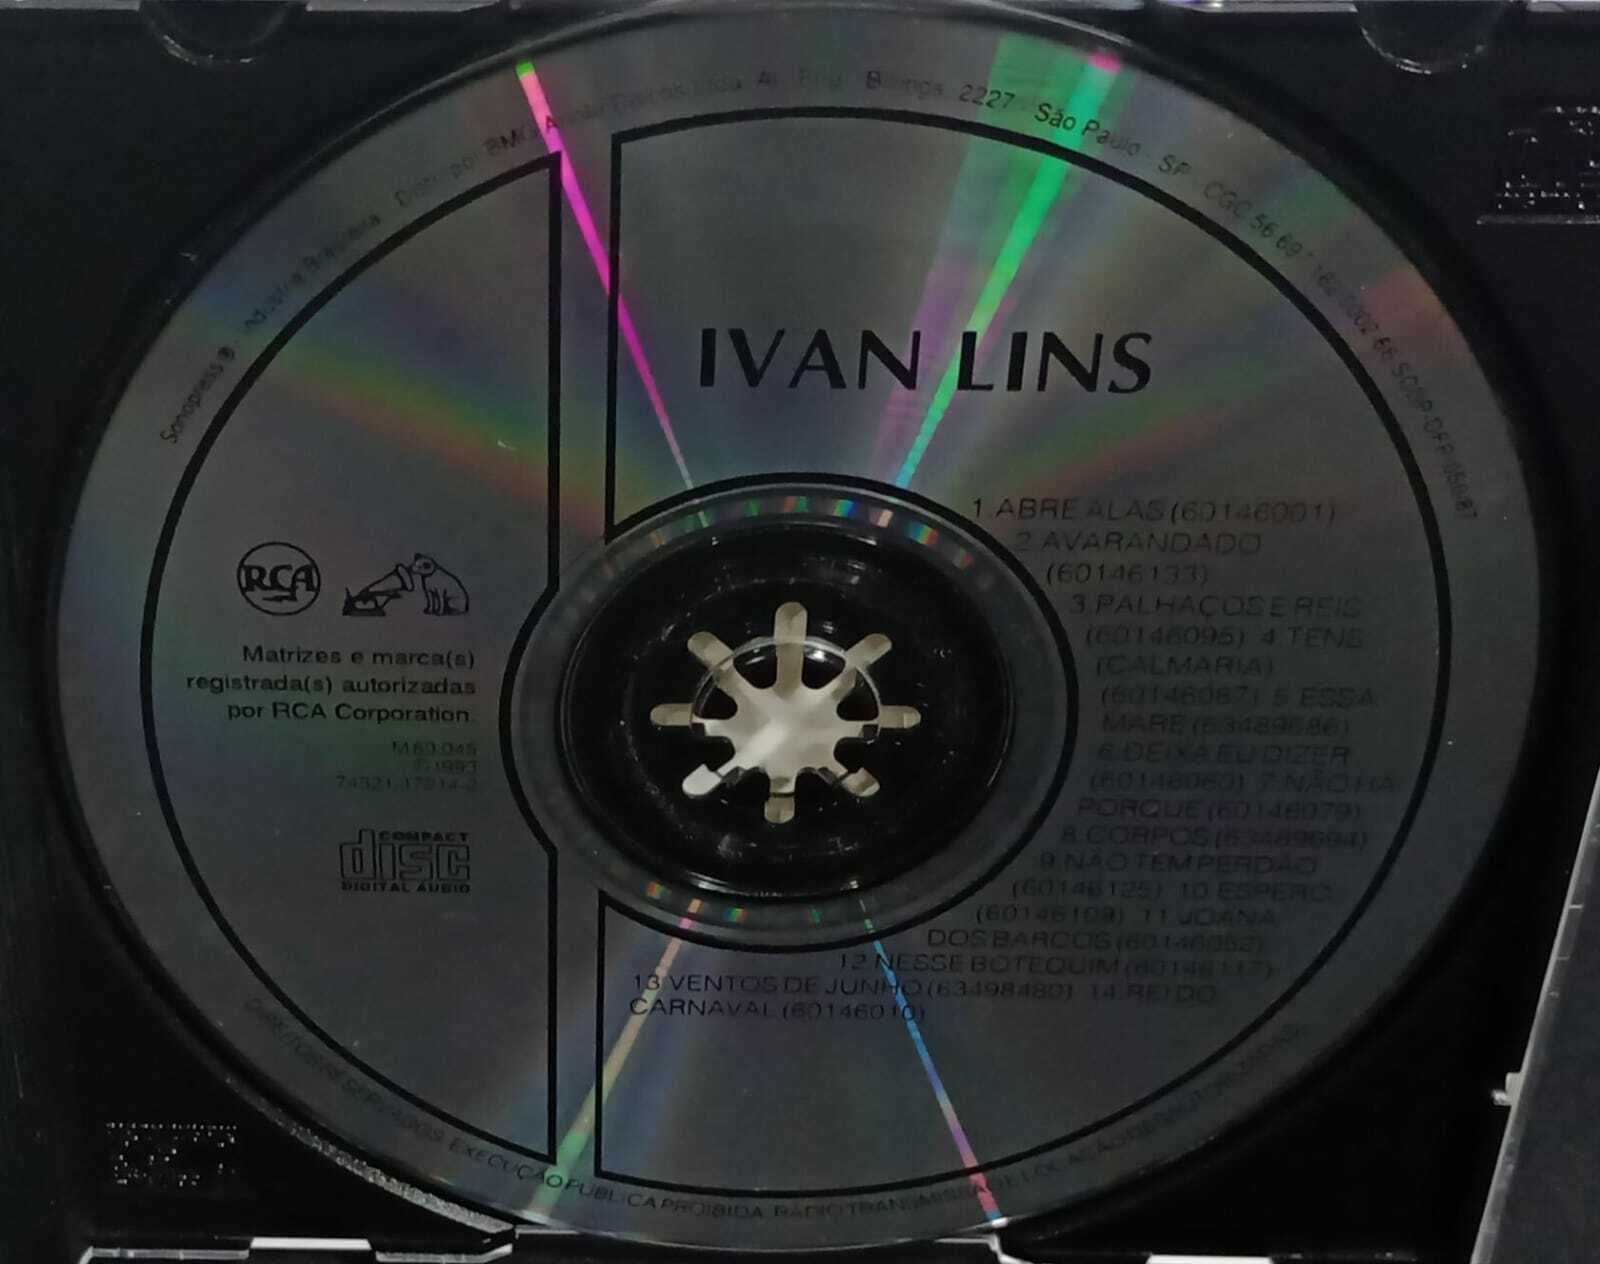 CD - Ivan Lins - Acervo Especial